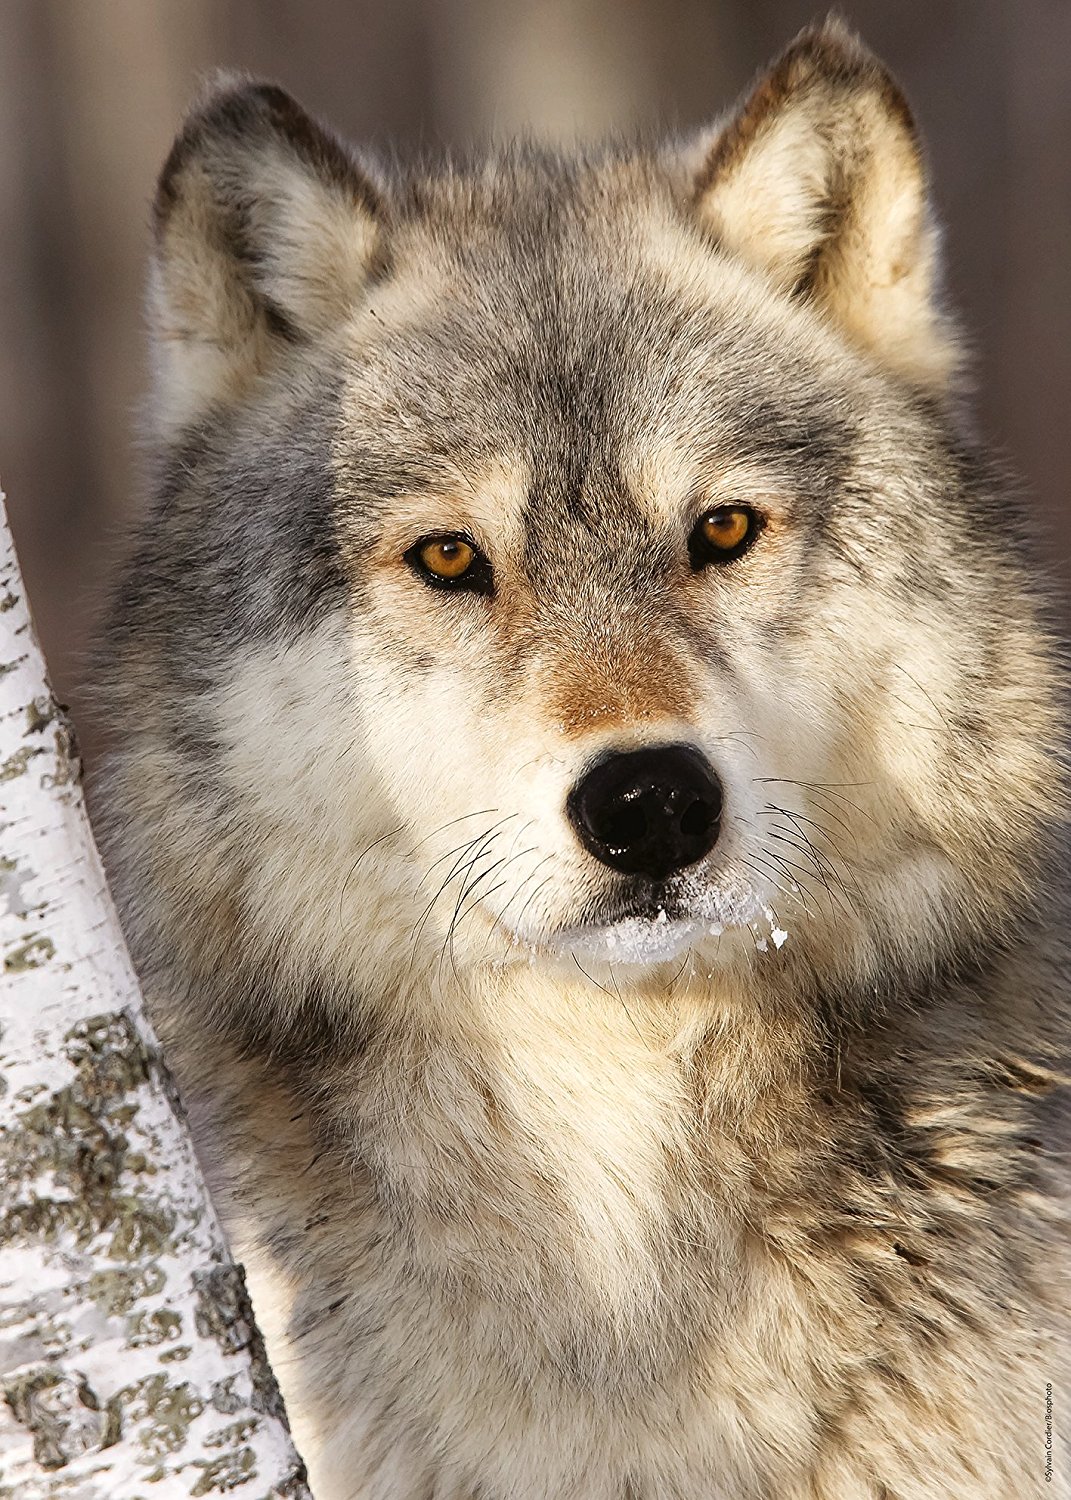 Puzzle 1000 pièces - Famille de loups dans la forêt